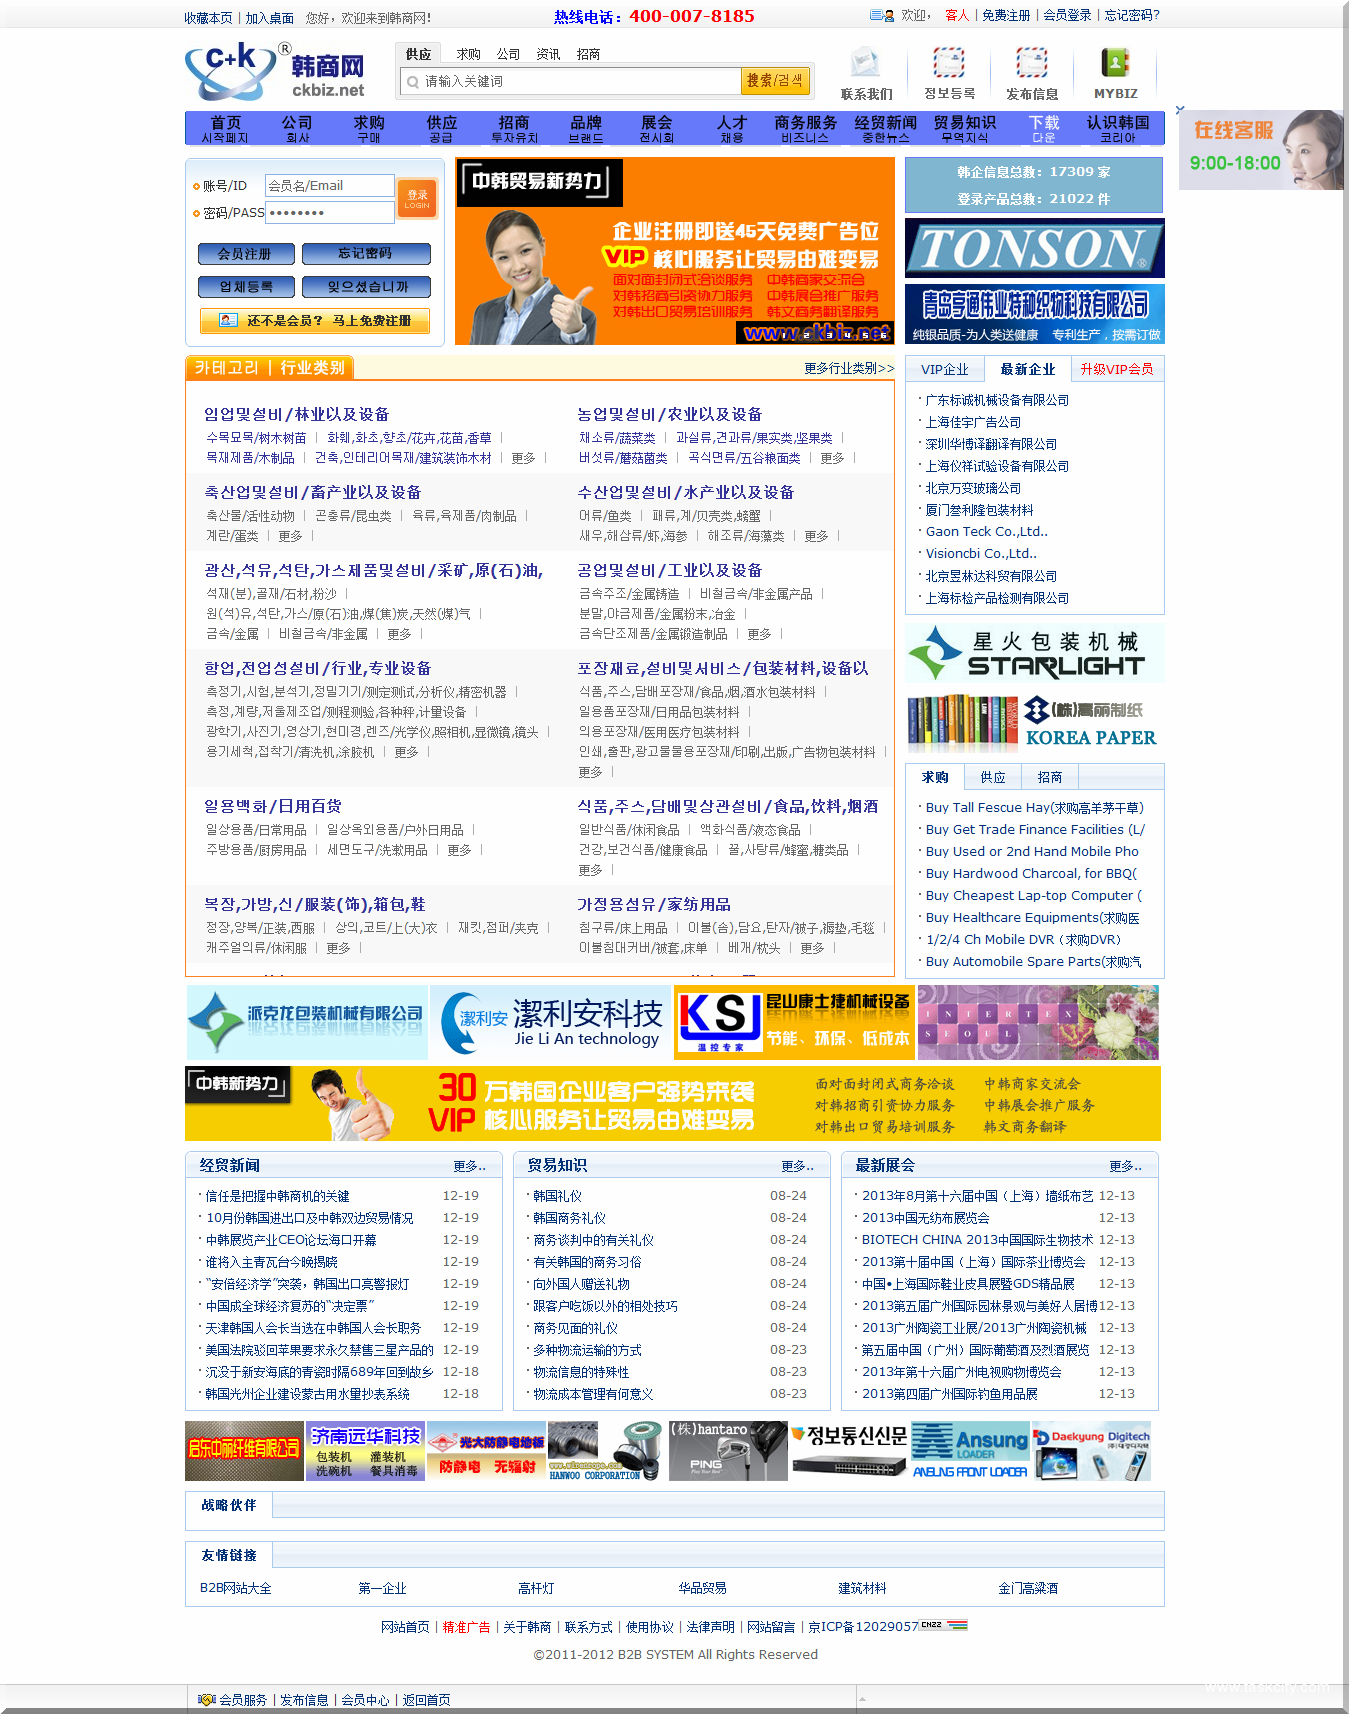 韩商网—中国最专业的中韩贸易电子商务平台